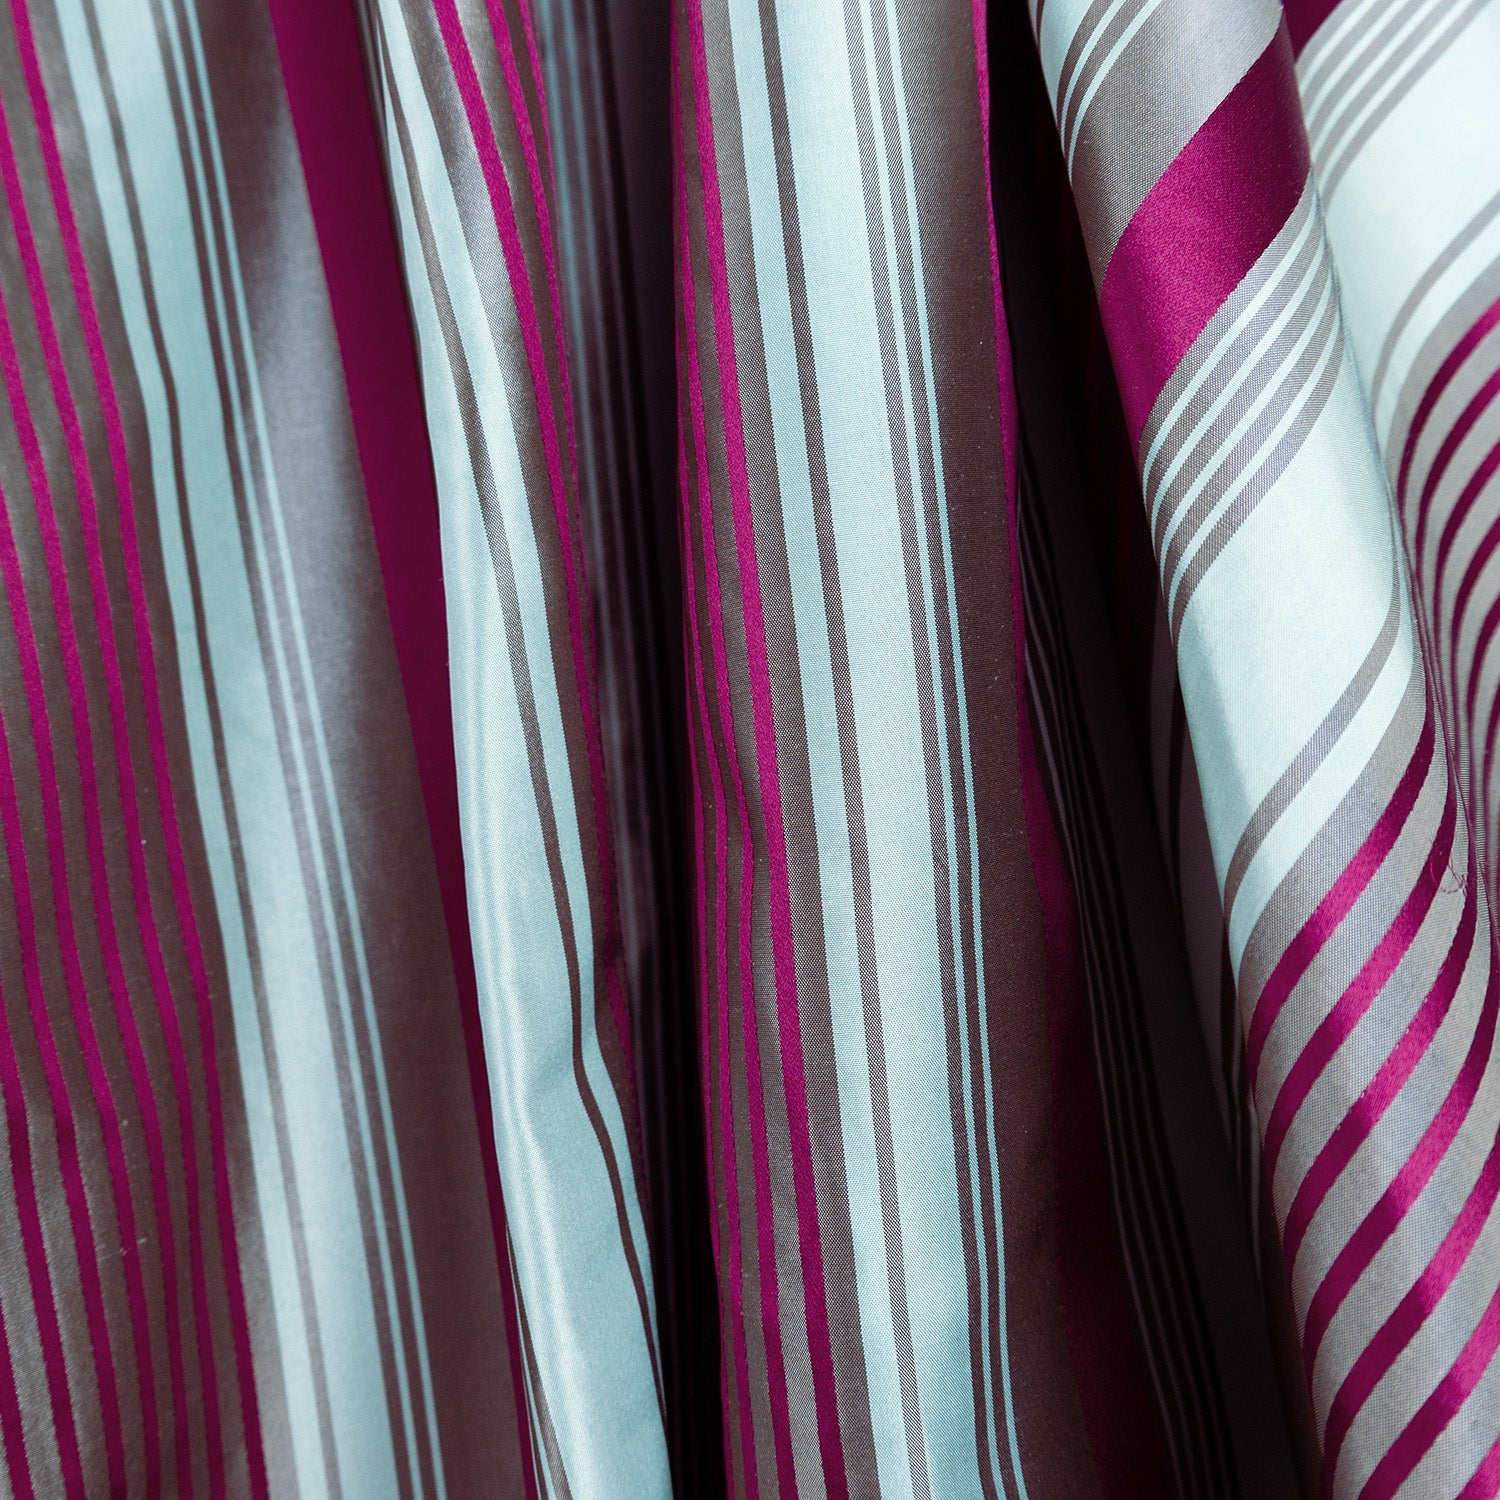 Dark Red, Light Saxon Green & Warm Grey Striped Silk Taffeta - $25.00 yd. - Burnley & Trowbridge Co.